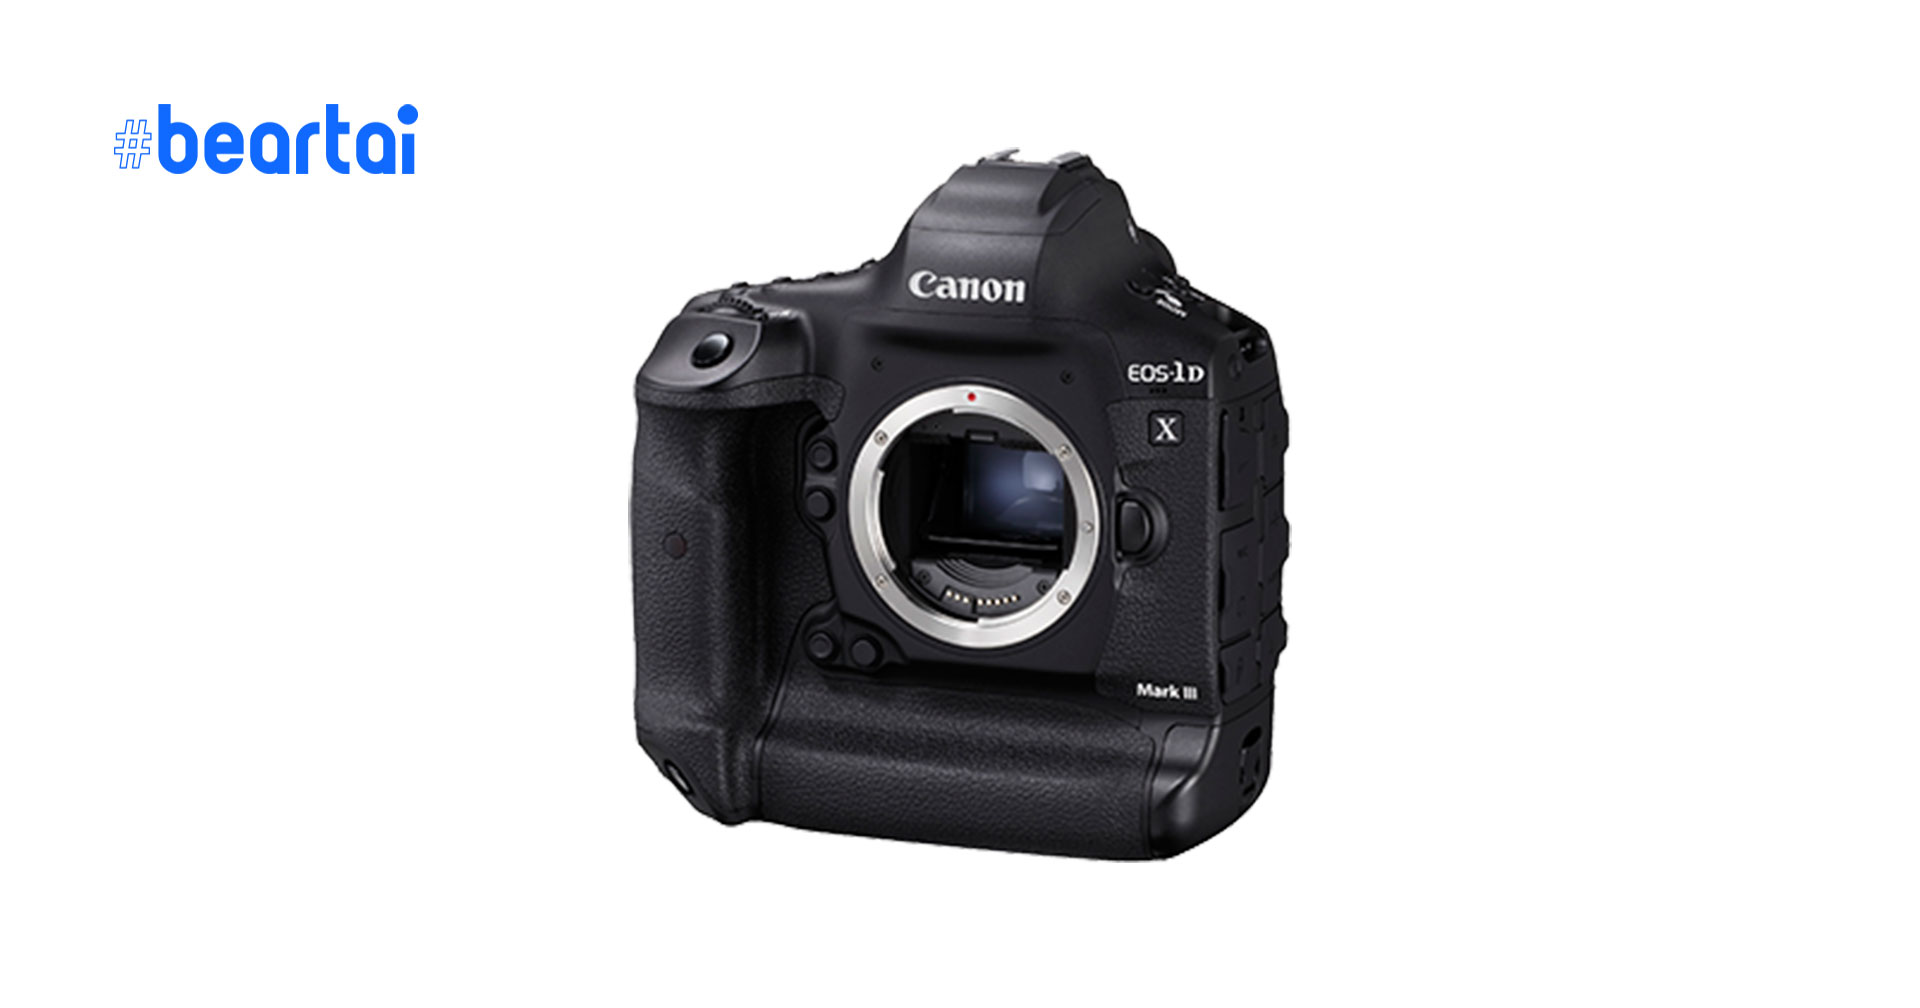 Canon อัปเดตเฟิร์มแวร์ใหม่ v.1.2.0 สำหรับ 1DX Mark III ปรับปรุง autofocus และการเชื่อมต่อ